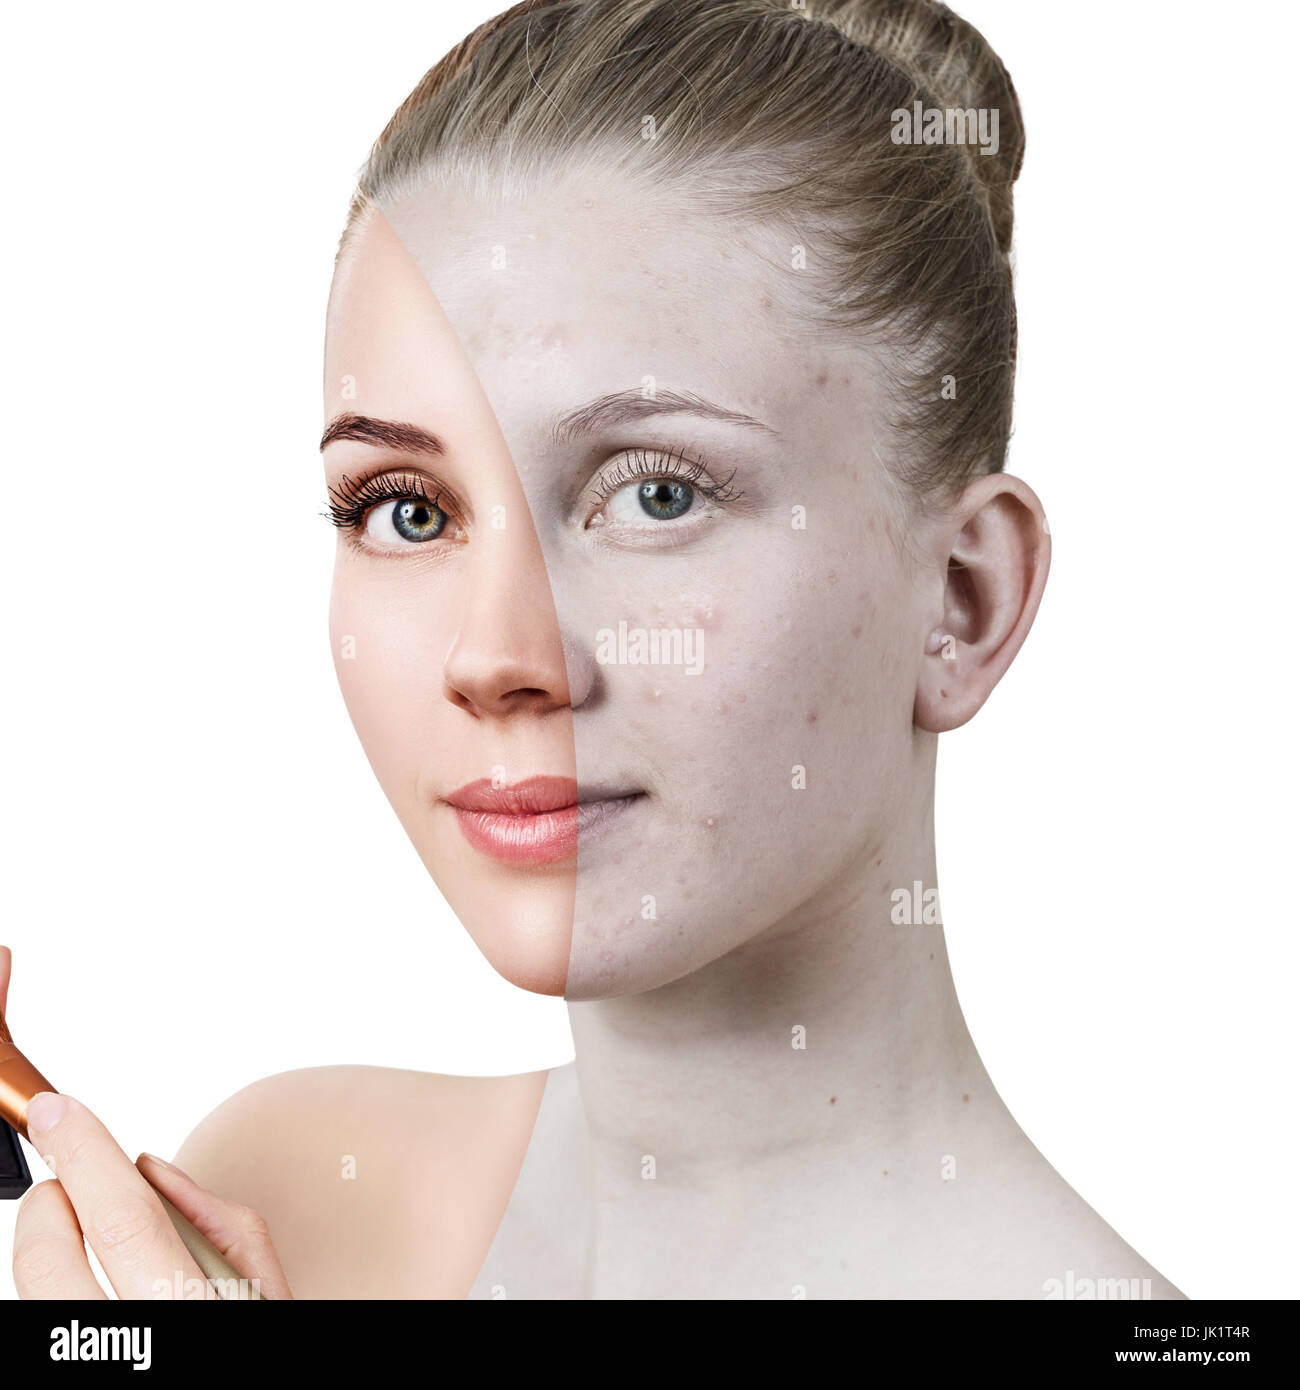 Junge Frau mit Akne vor und nach der Behandlung. Stockfoto